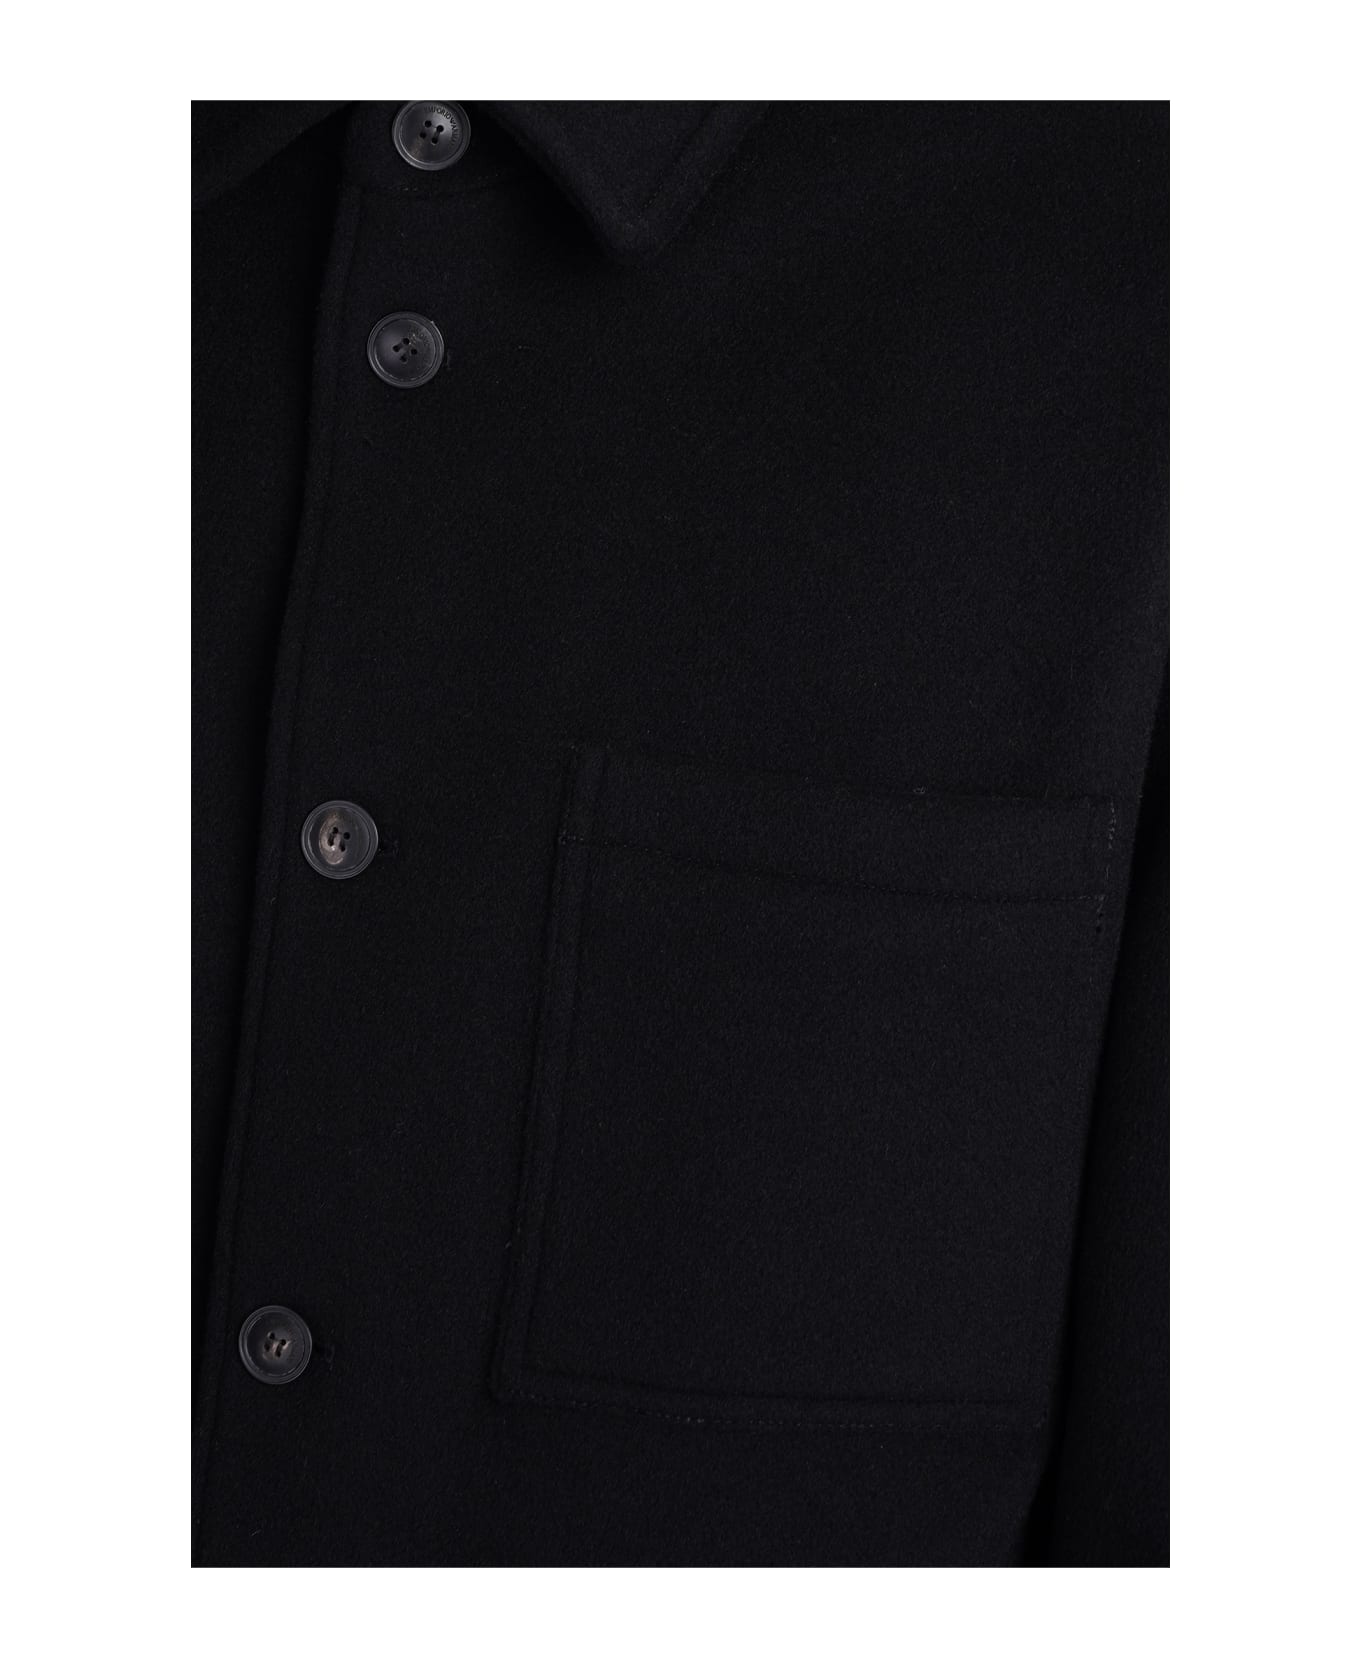 Emporio Armani Casual Jacket In Black Wool - black